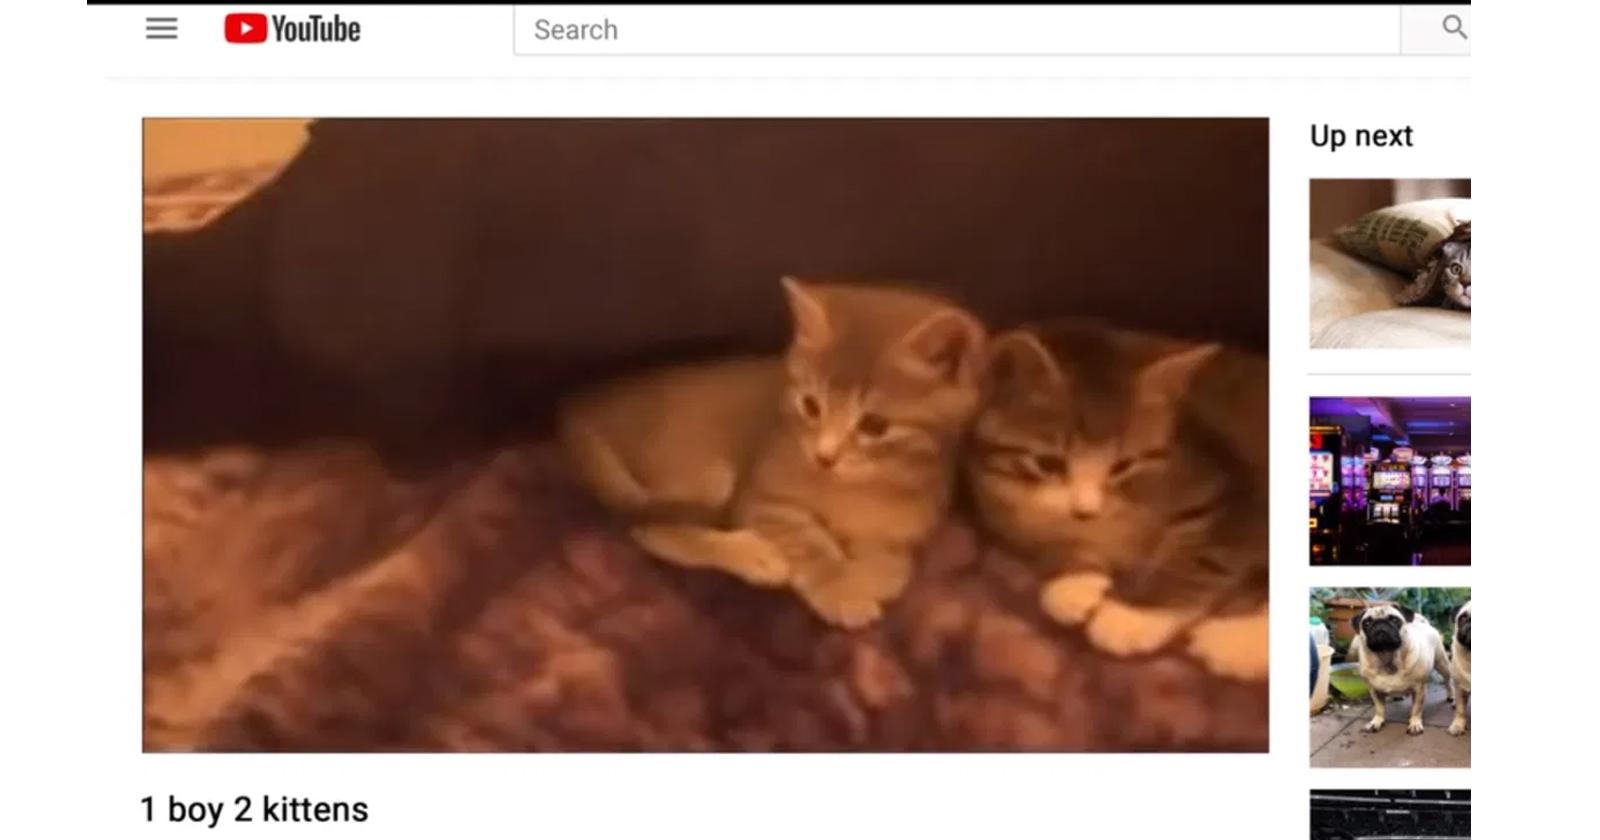 Captura en Youtube de uno de los vídeos subidos por Magnotta: 1 boy 2 kittens.